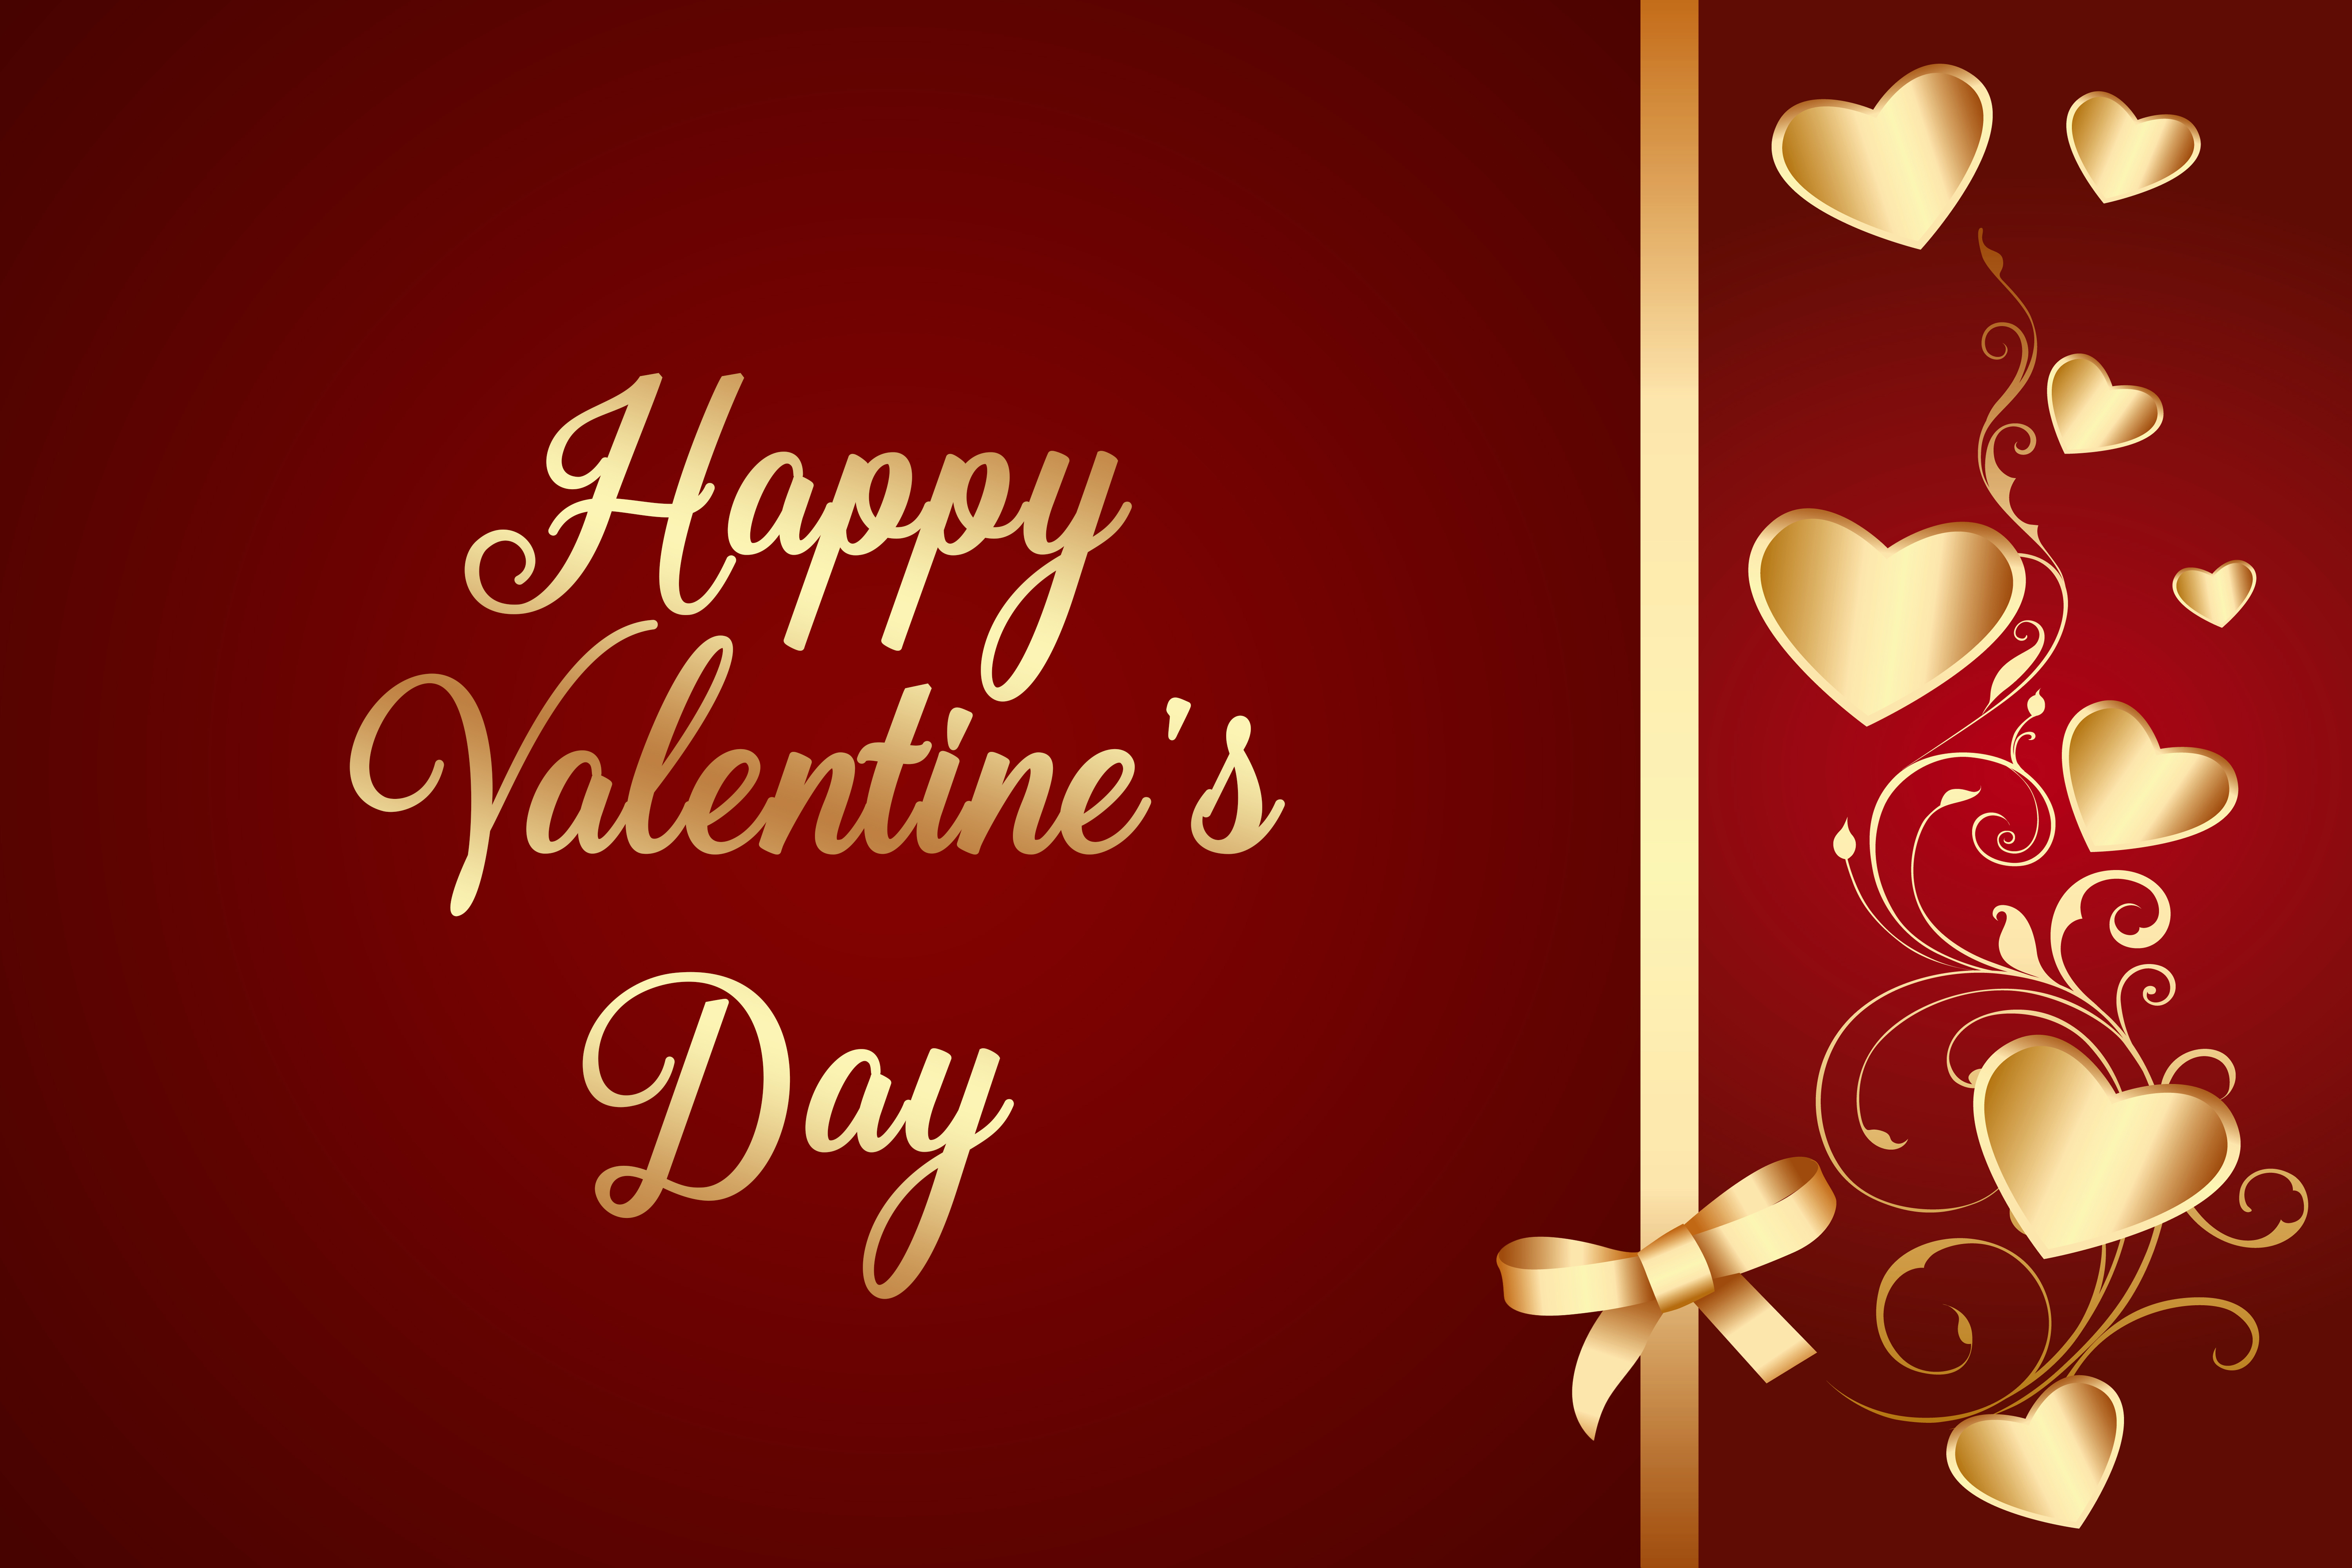 felice giorno di san valentino wallpaper hd,cuore,san valentino,testo,font,amore